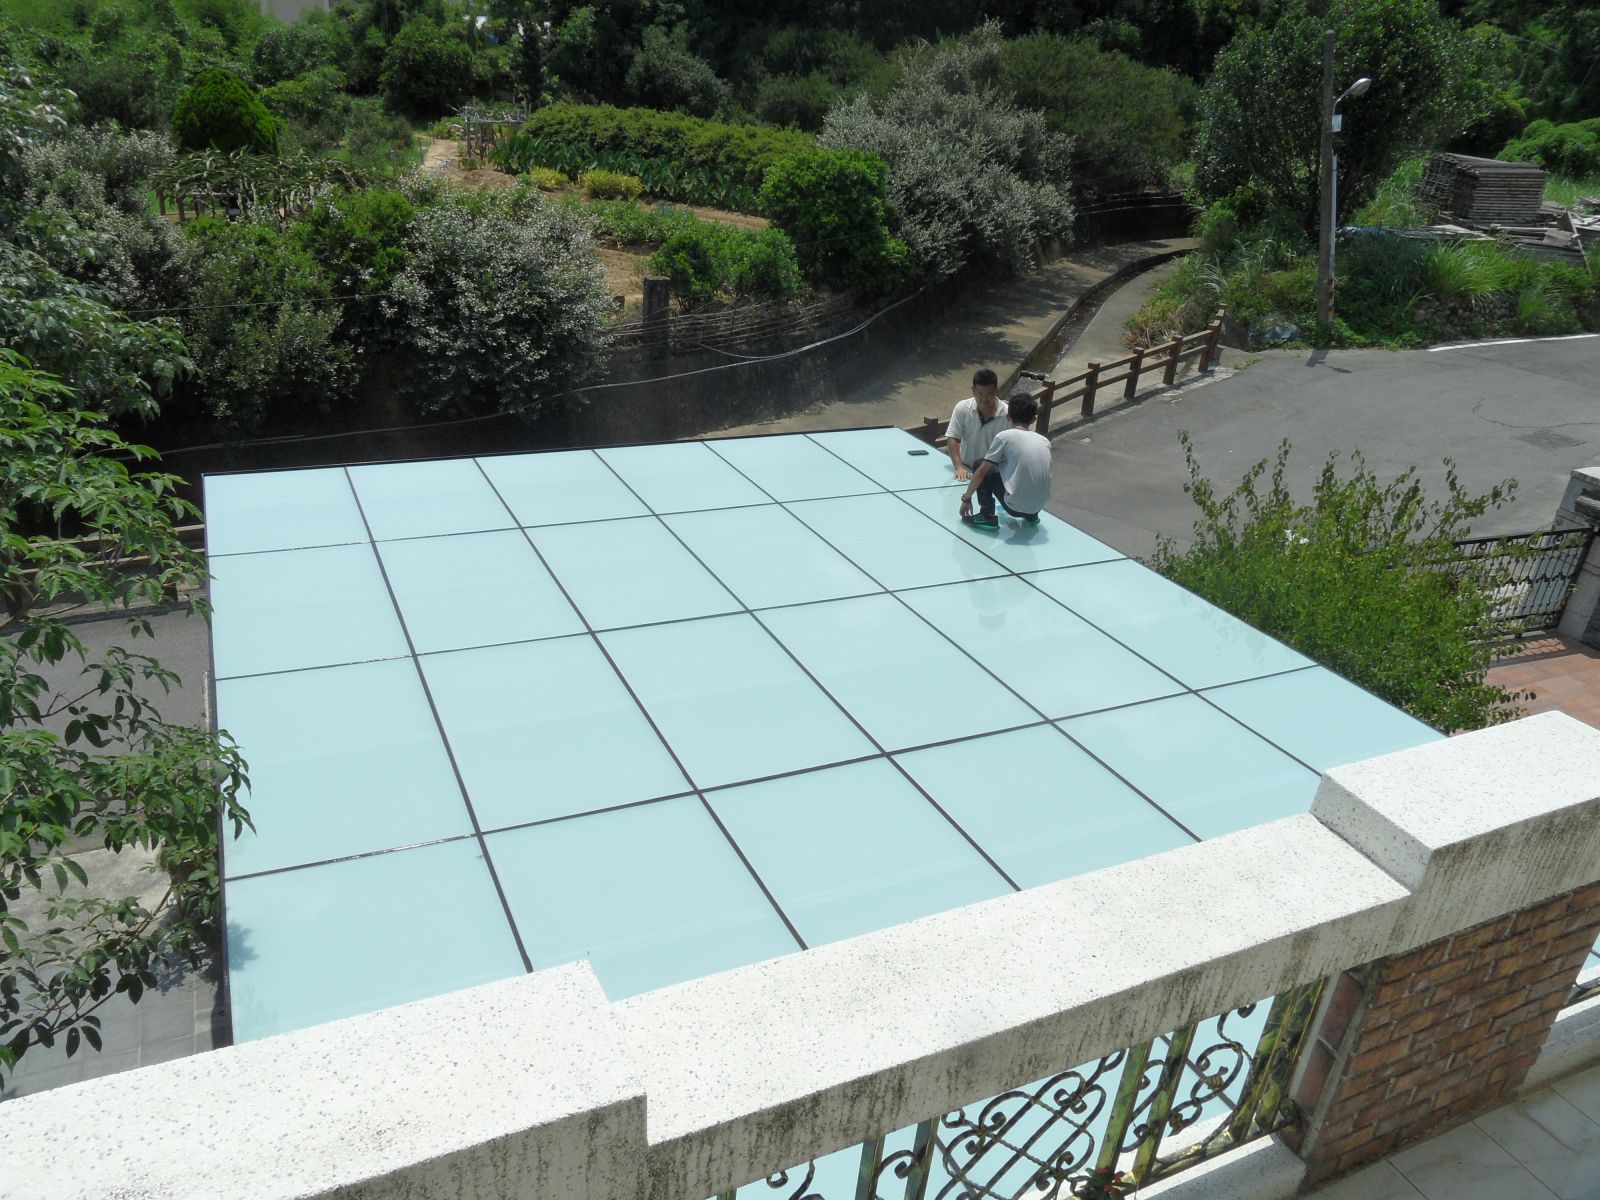 屋頂玻璃採用5+5強化膠合白膜玻璃,將玻璃與玻璃間伸縮縫確實填滿